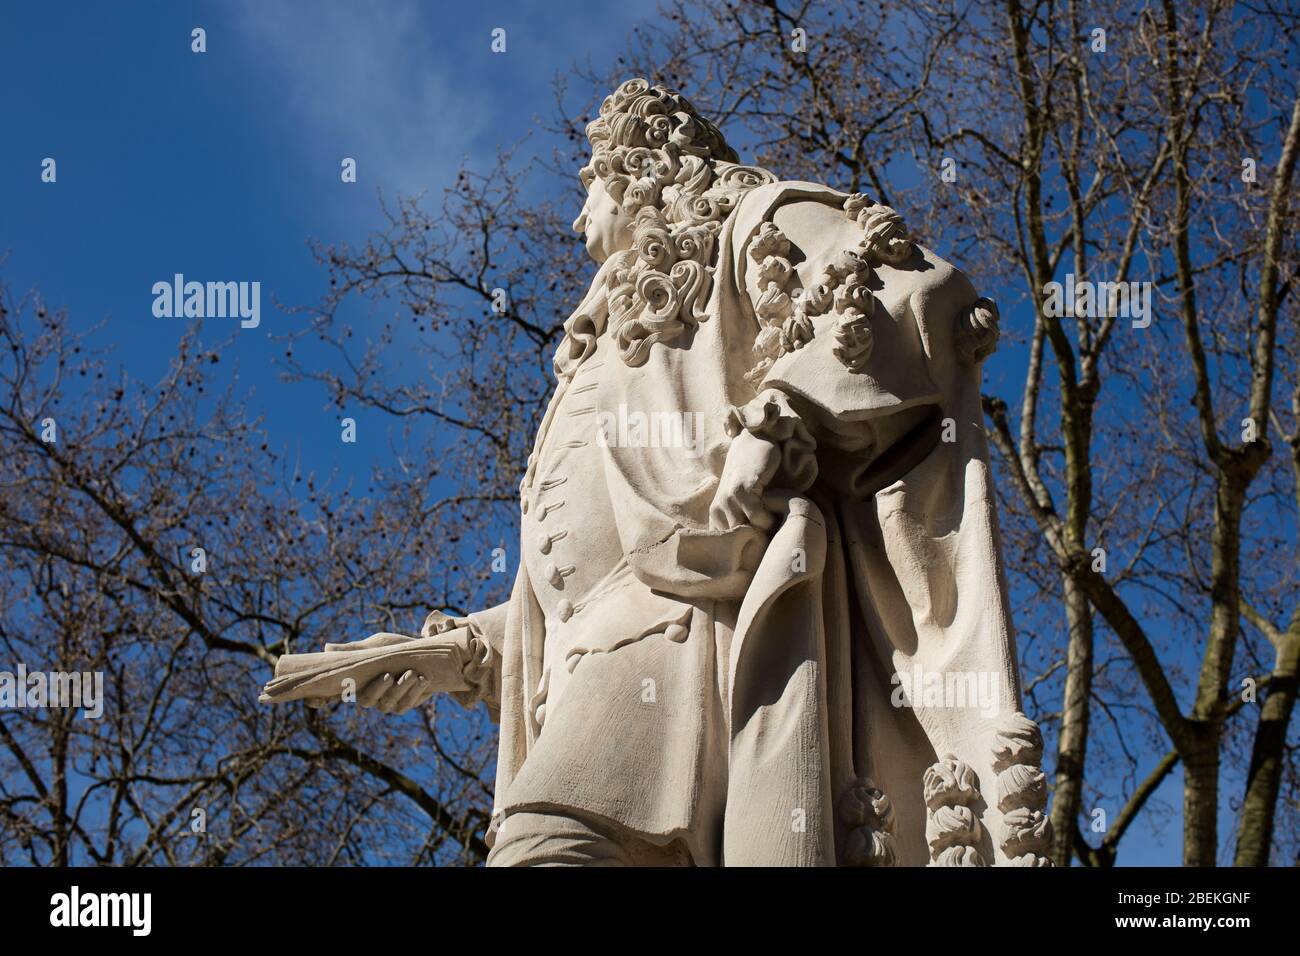 Statue de Sir Hans Sloane, 1ère Baronet, PRS FRS sur la place du Duc de York, près de Sloane Square, Kensington, Londres, Royaume-Uni; sculptée par Simon Smith, 2005 Banque D'Images